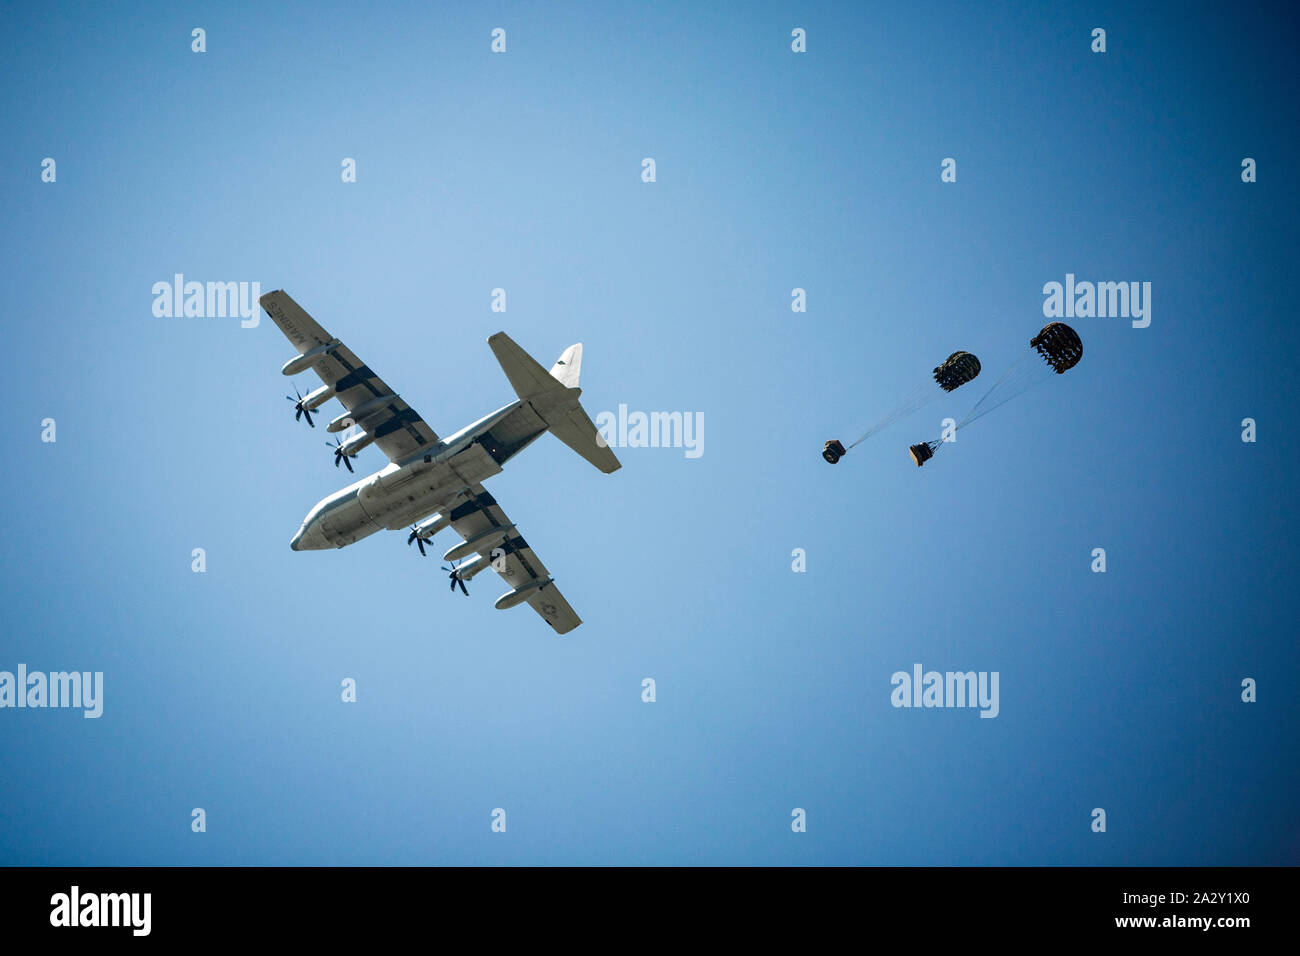 Un avión C-130 precisamente cae carga durante un ejercicio de entrenamiento en la isla de Ie Shima, Okinawa, Japón, Octubre 2, 2019. El ejercicio destacó la entrega segura y eficaz del personal y del equipo. (Infantería de Marina de EE.UU Foto por CPL. Christopher Madero) Foto de stock